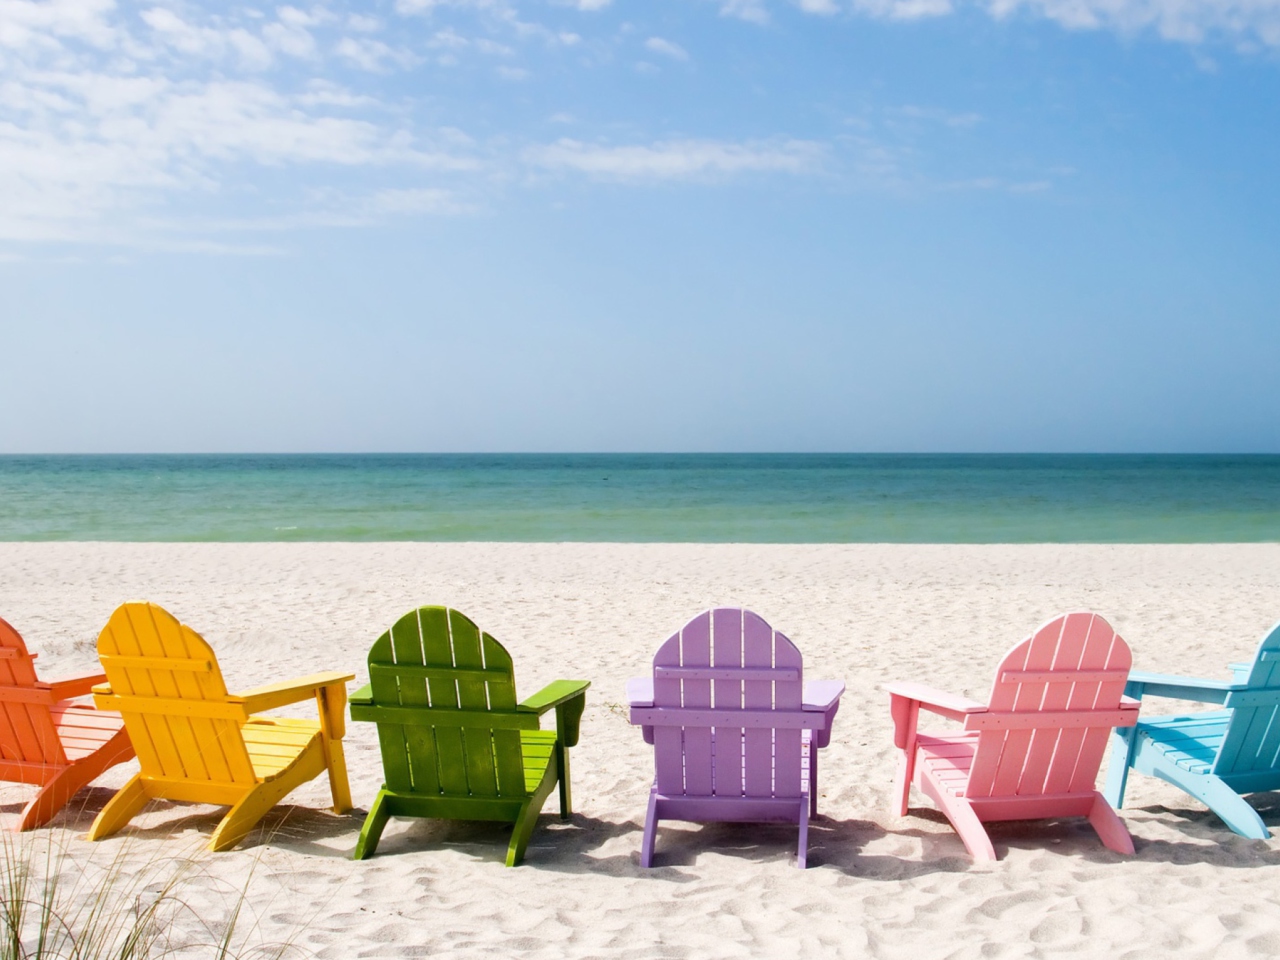 Обои Beach Chairs 1280x960